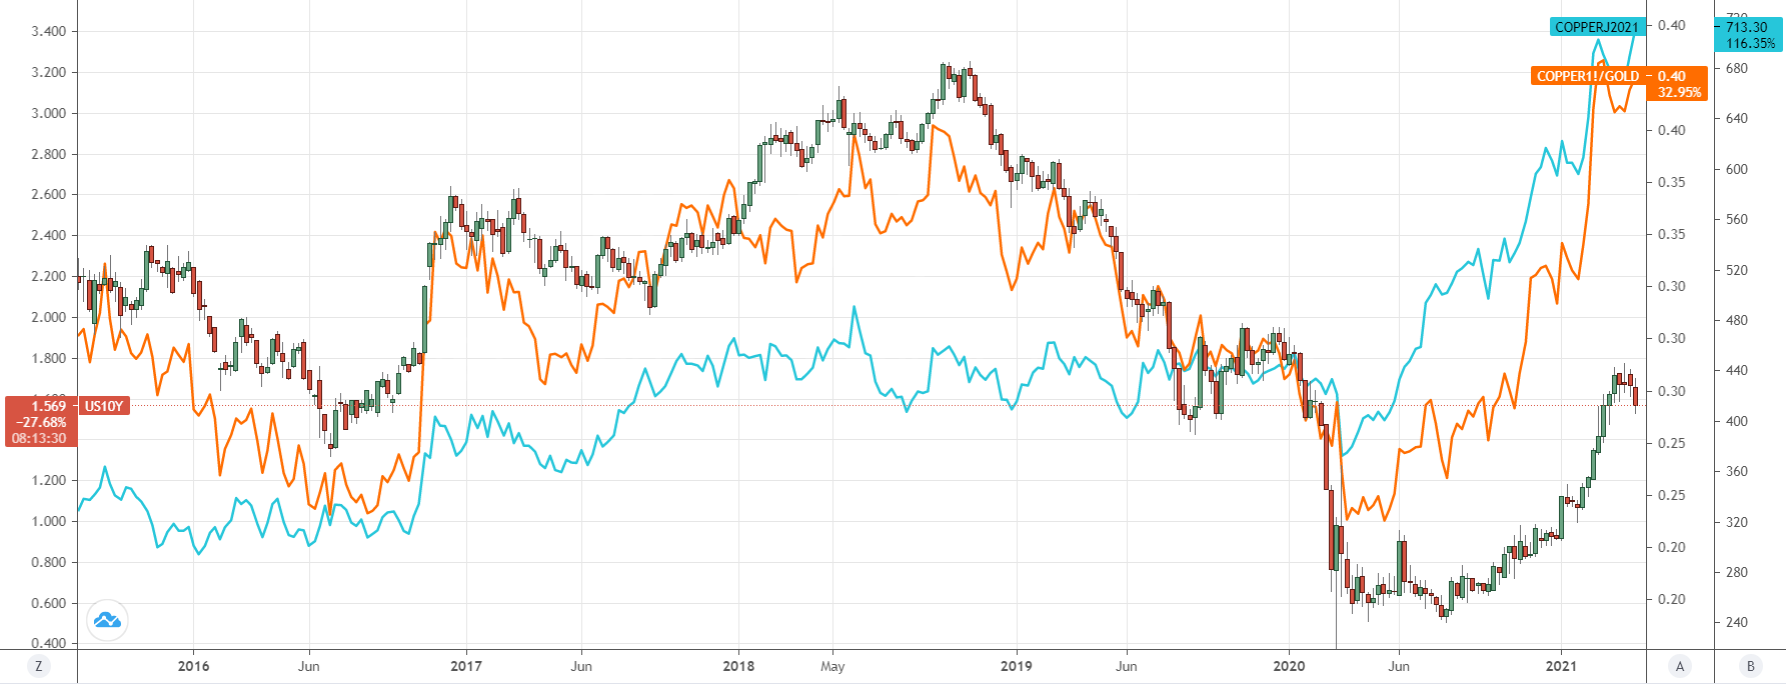 Copper vs yields chart